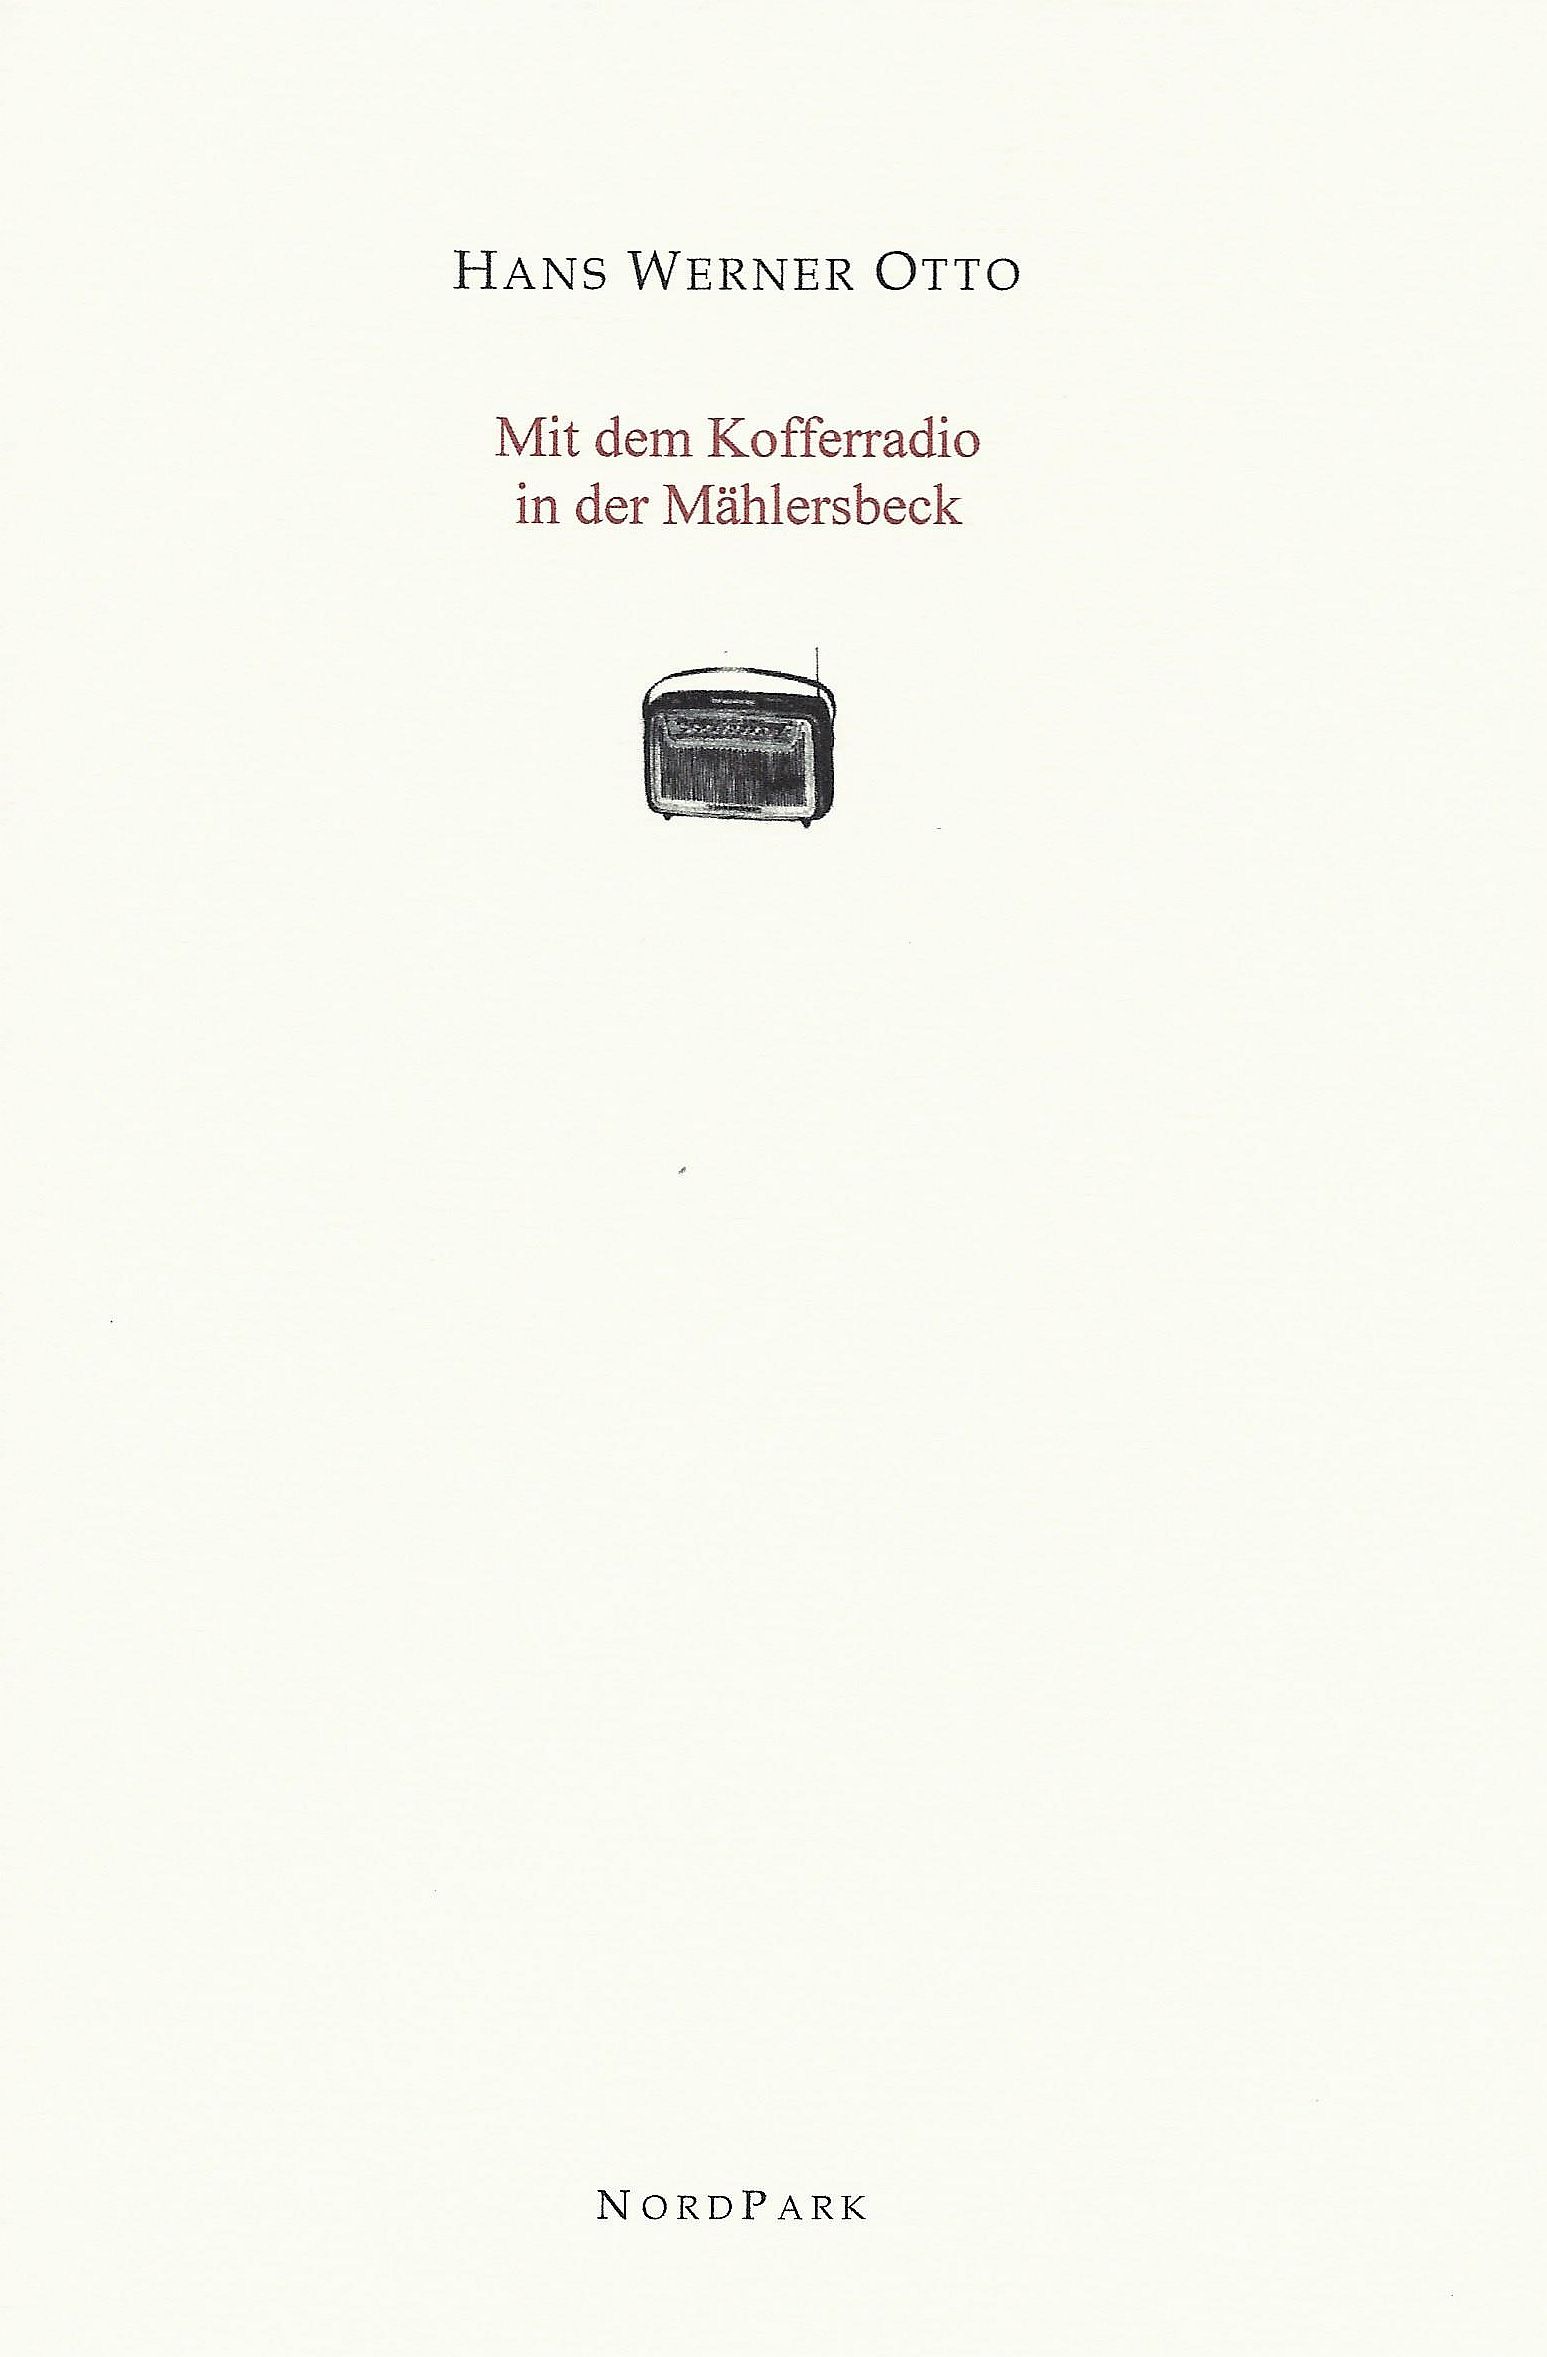 Otto-hans-werner-Maehlersbeck-cover.jpg